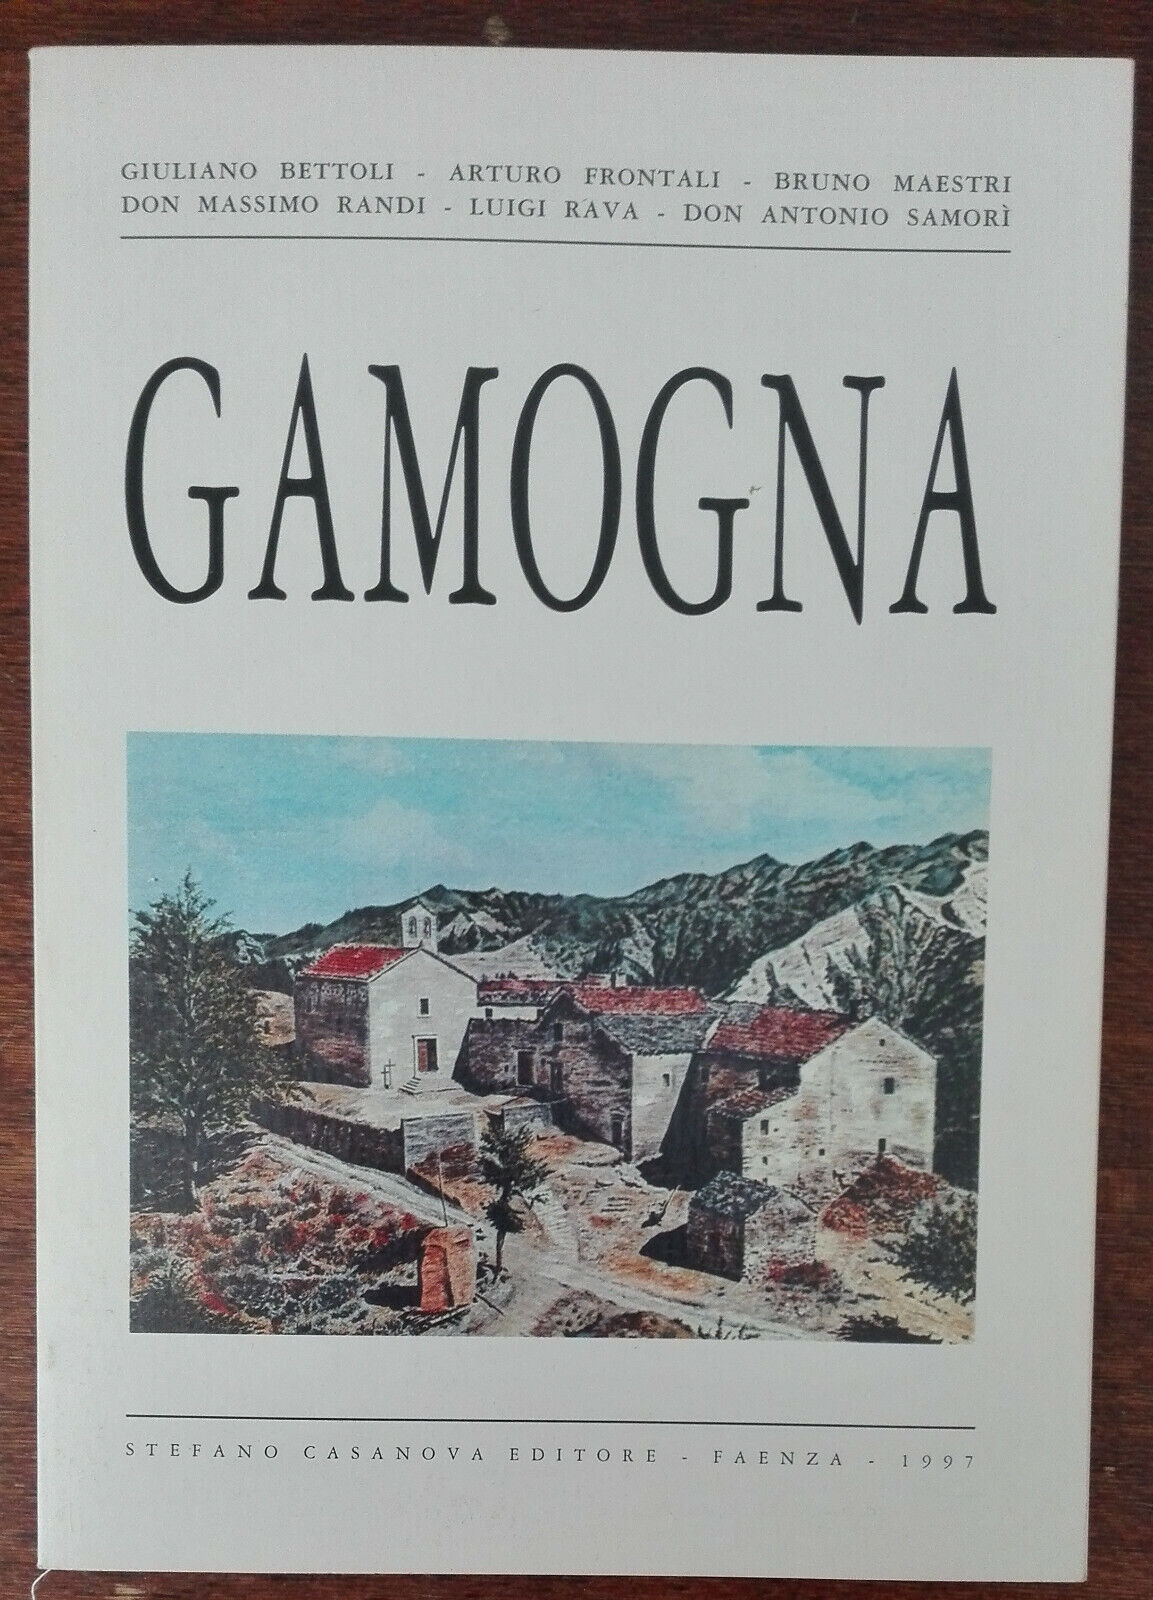 Gamogna - AA.VV. - Stefano Casanova, 1997 - A